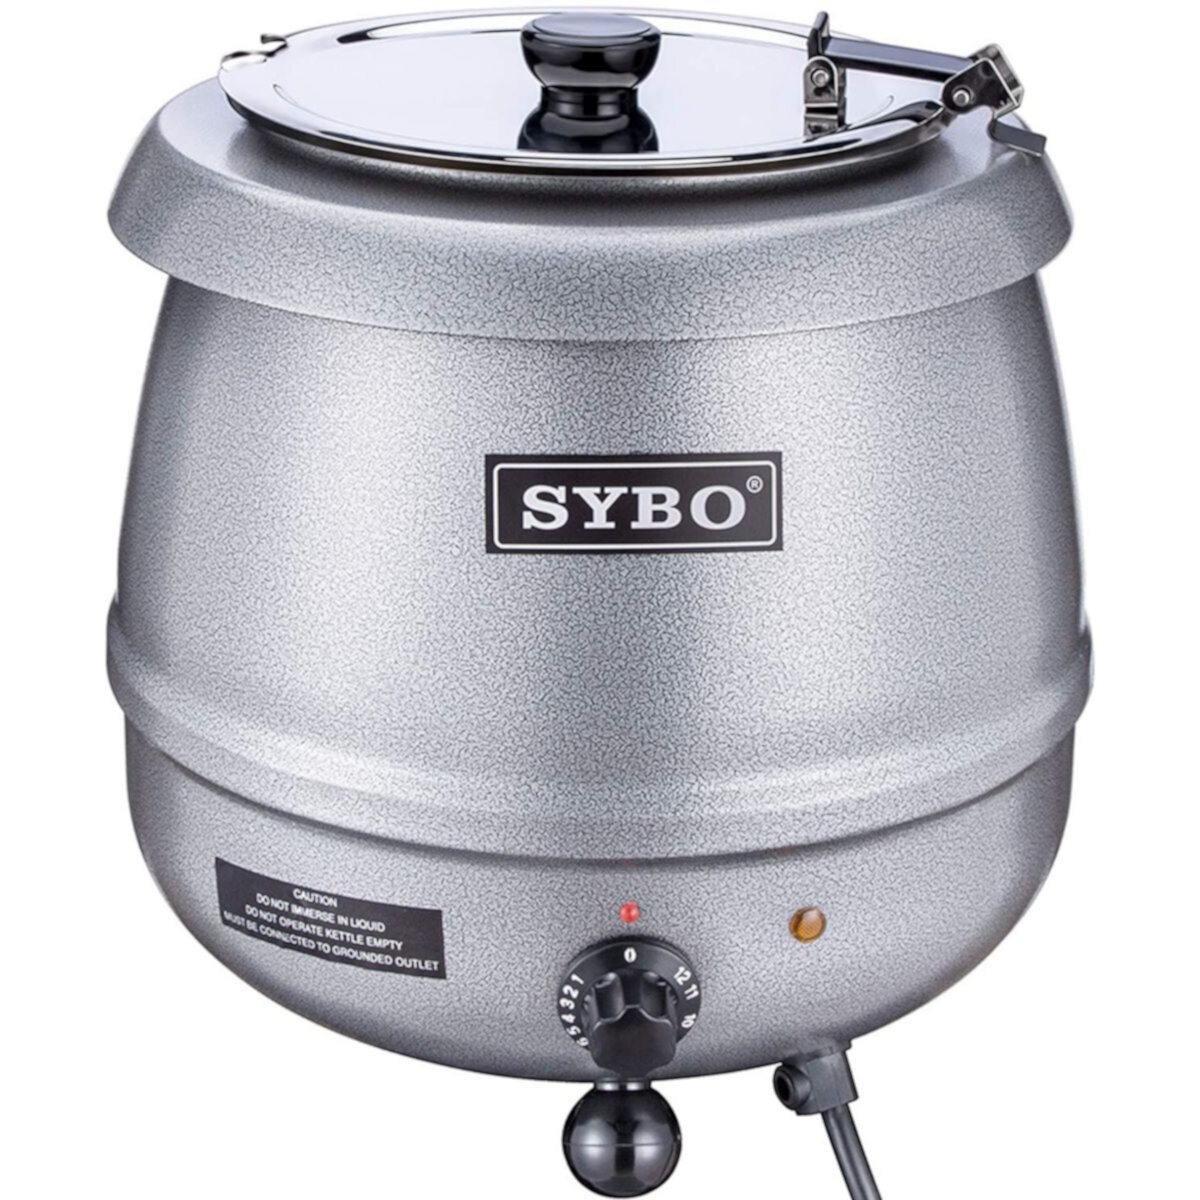 Sybo 10,5-квартовая электрическая кастрюля для подогрева супа, коммерческая мультиварка с откидной крышкой, серебристая Sybo